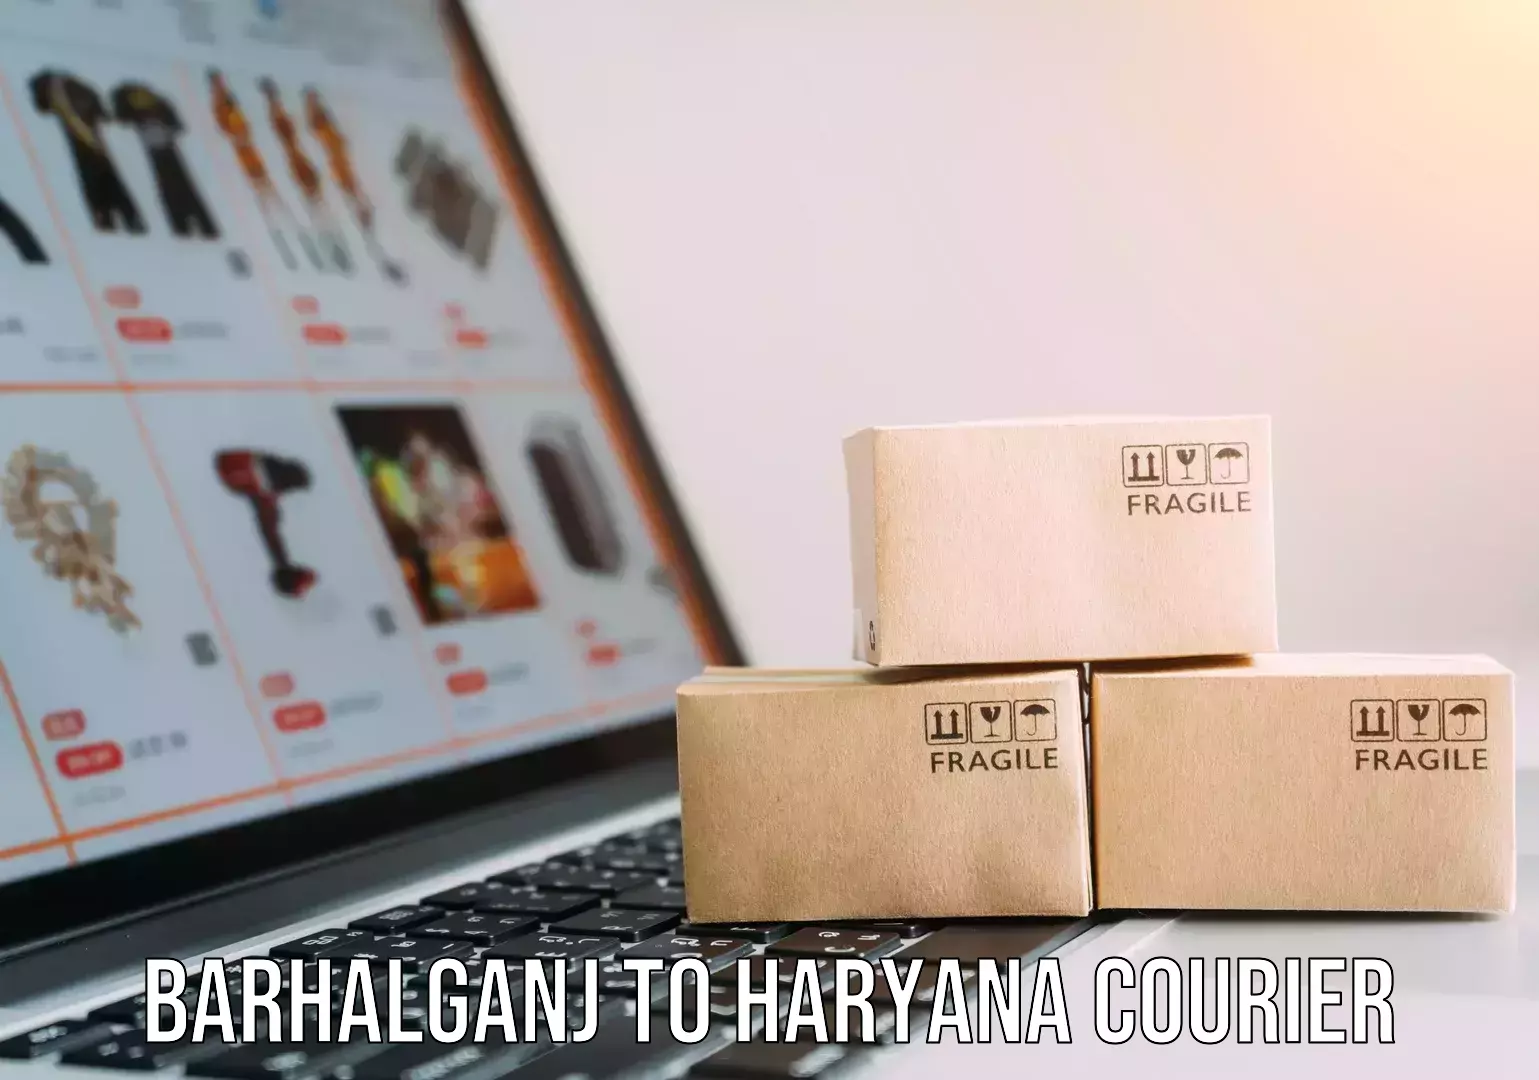 Door-to-door shipment Barhalganj to Haryana